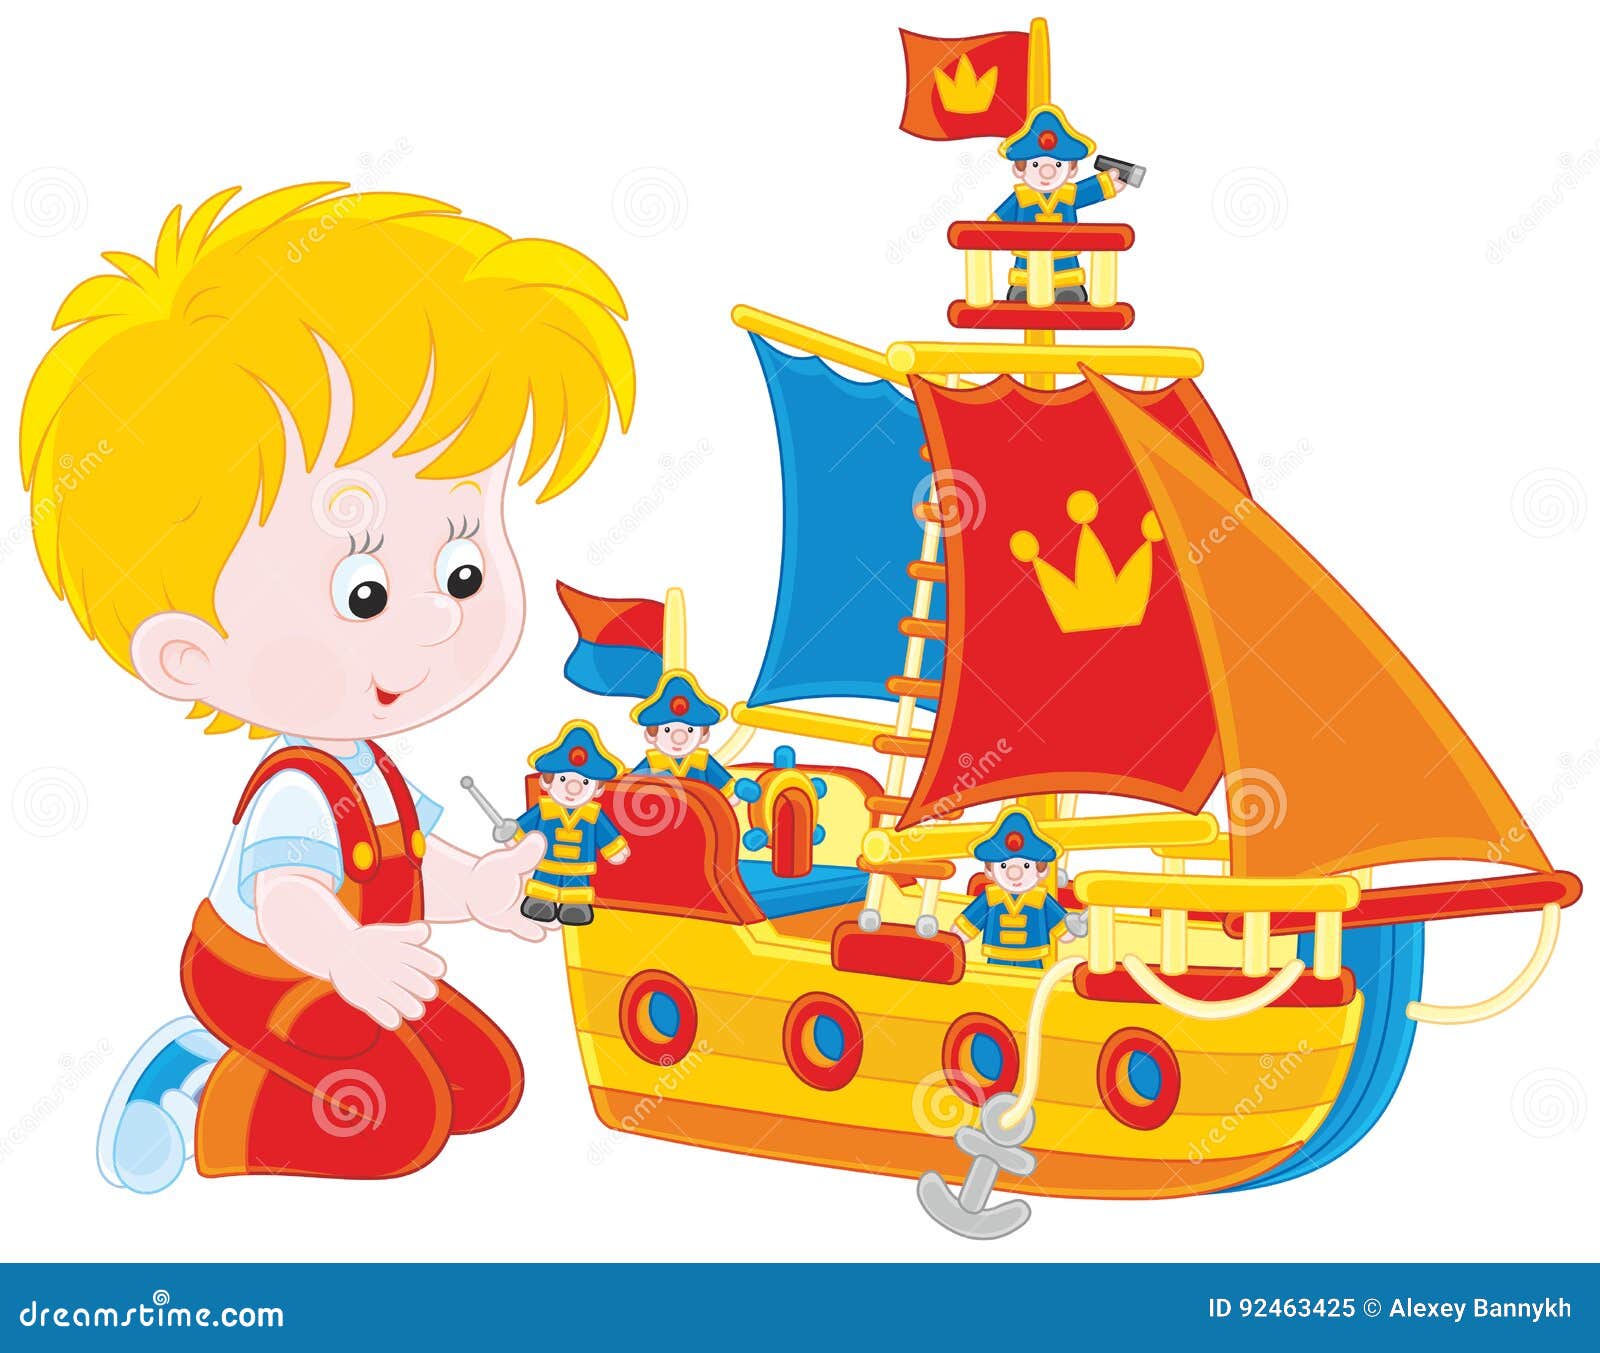 Игры дети корабли. Мальчик с корабликом. Кораблик для детей. Мальчик на корабле. Корабль мультяшный.